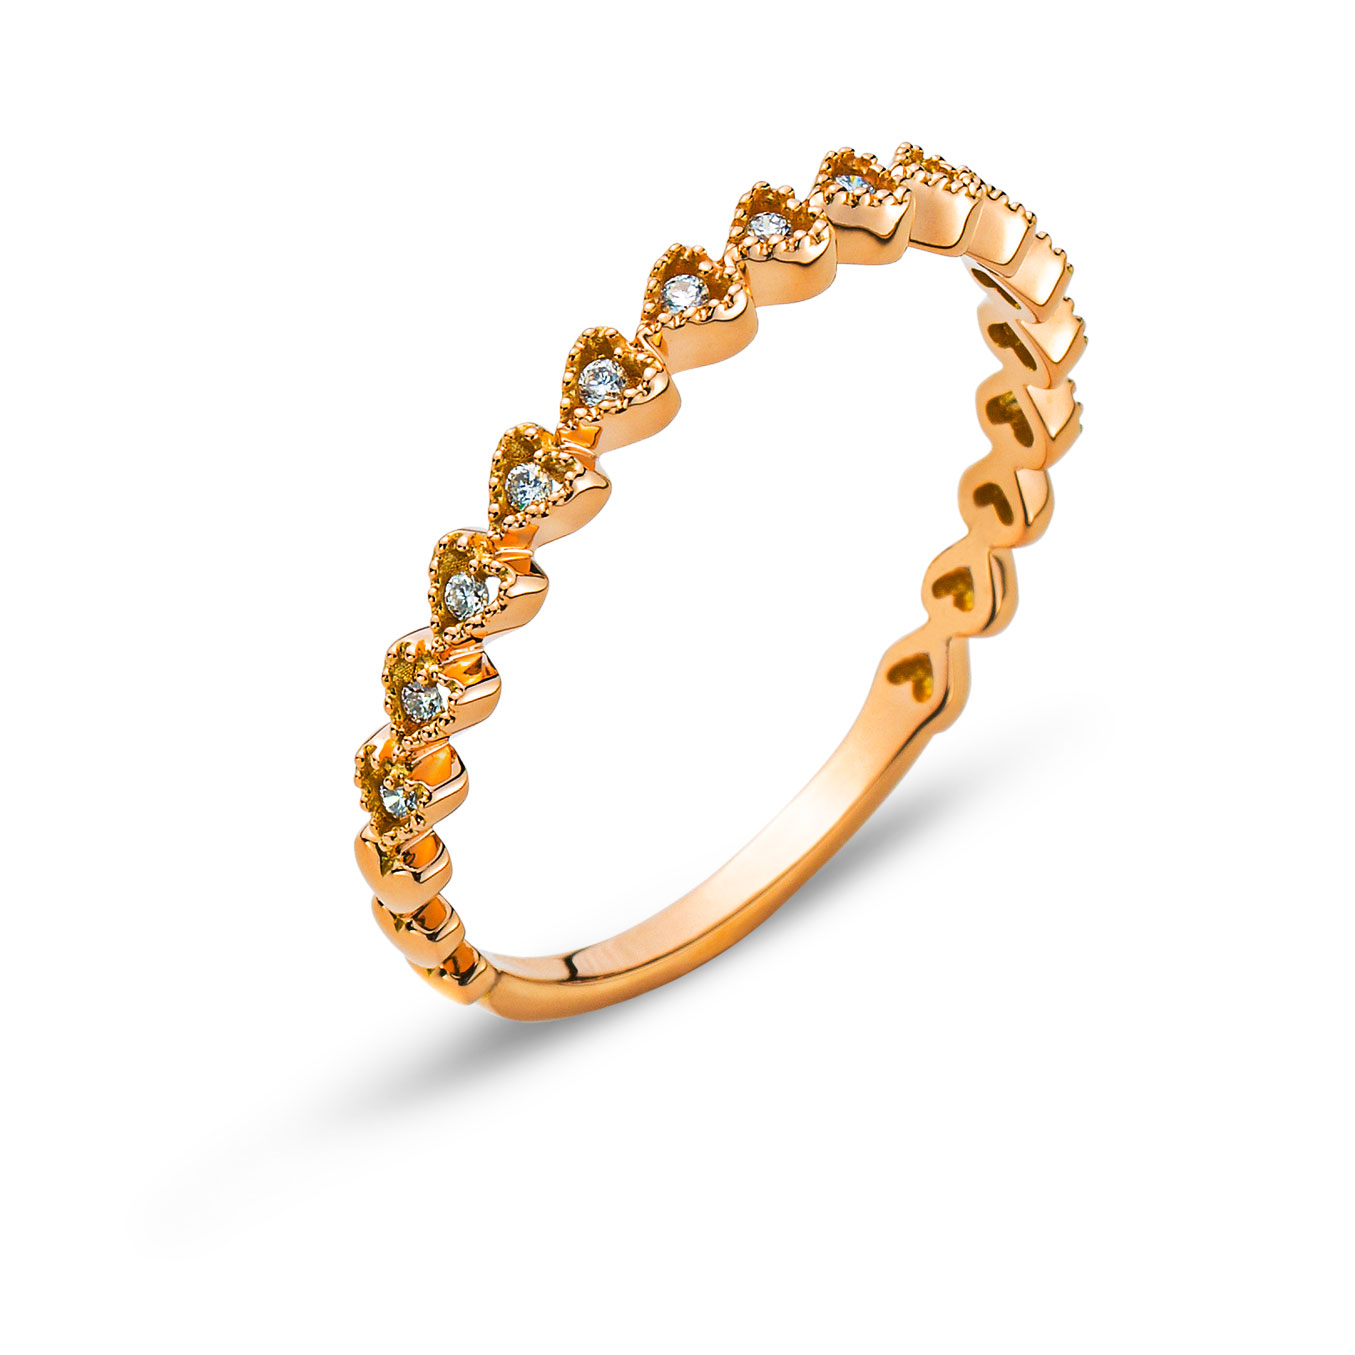 AURONOS Prestige Ring Mémoire Herz Roségold 18K Diamanten 0.06ct